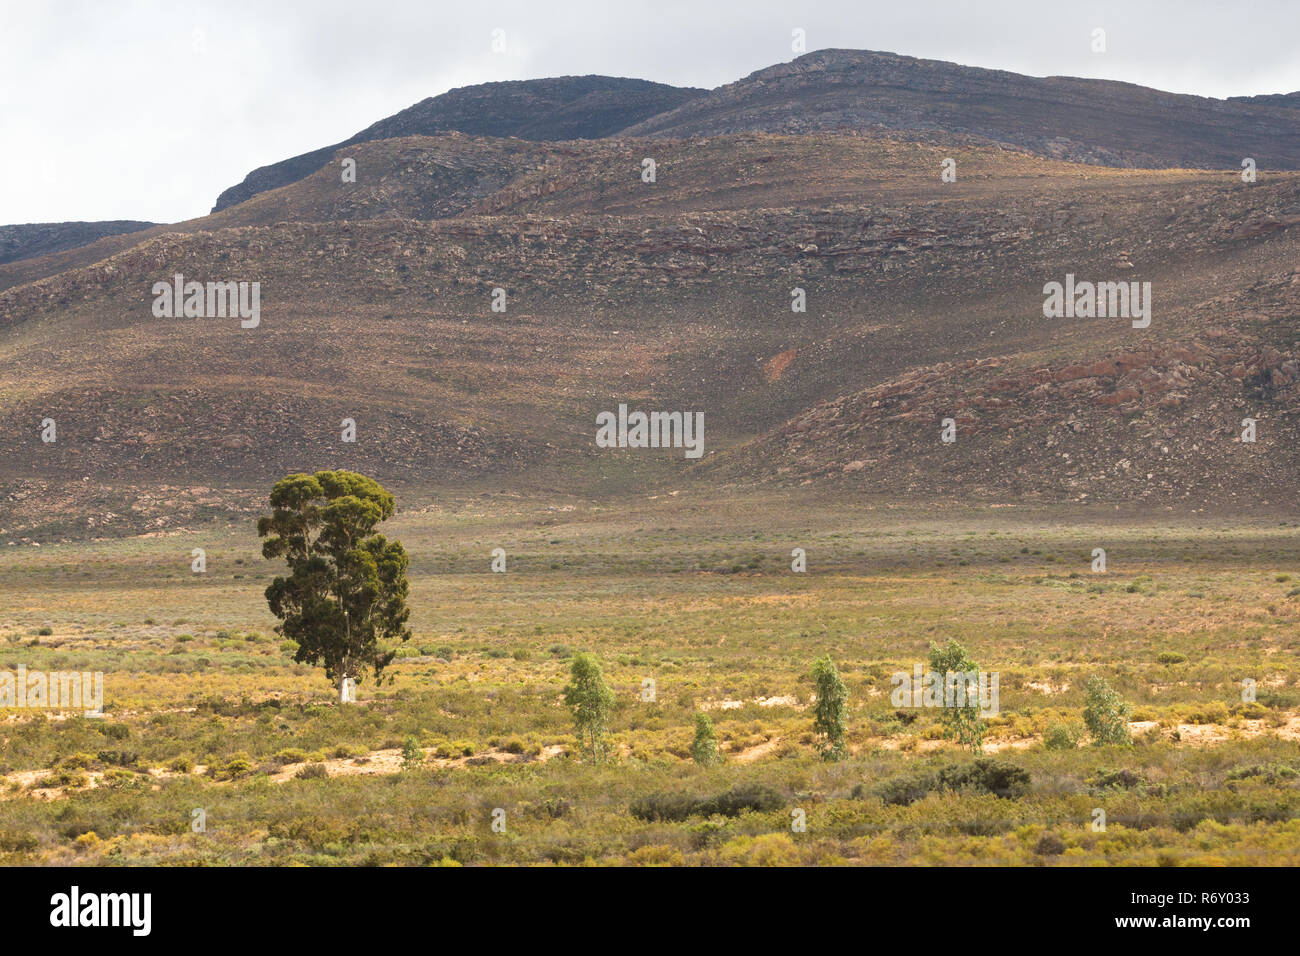 Karoo semi désert paysage avec des montagnes en arrière-plan et un arbre isolé à l'avant-plan Banque D'Images